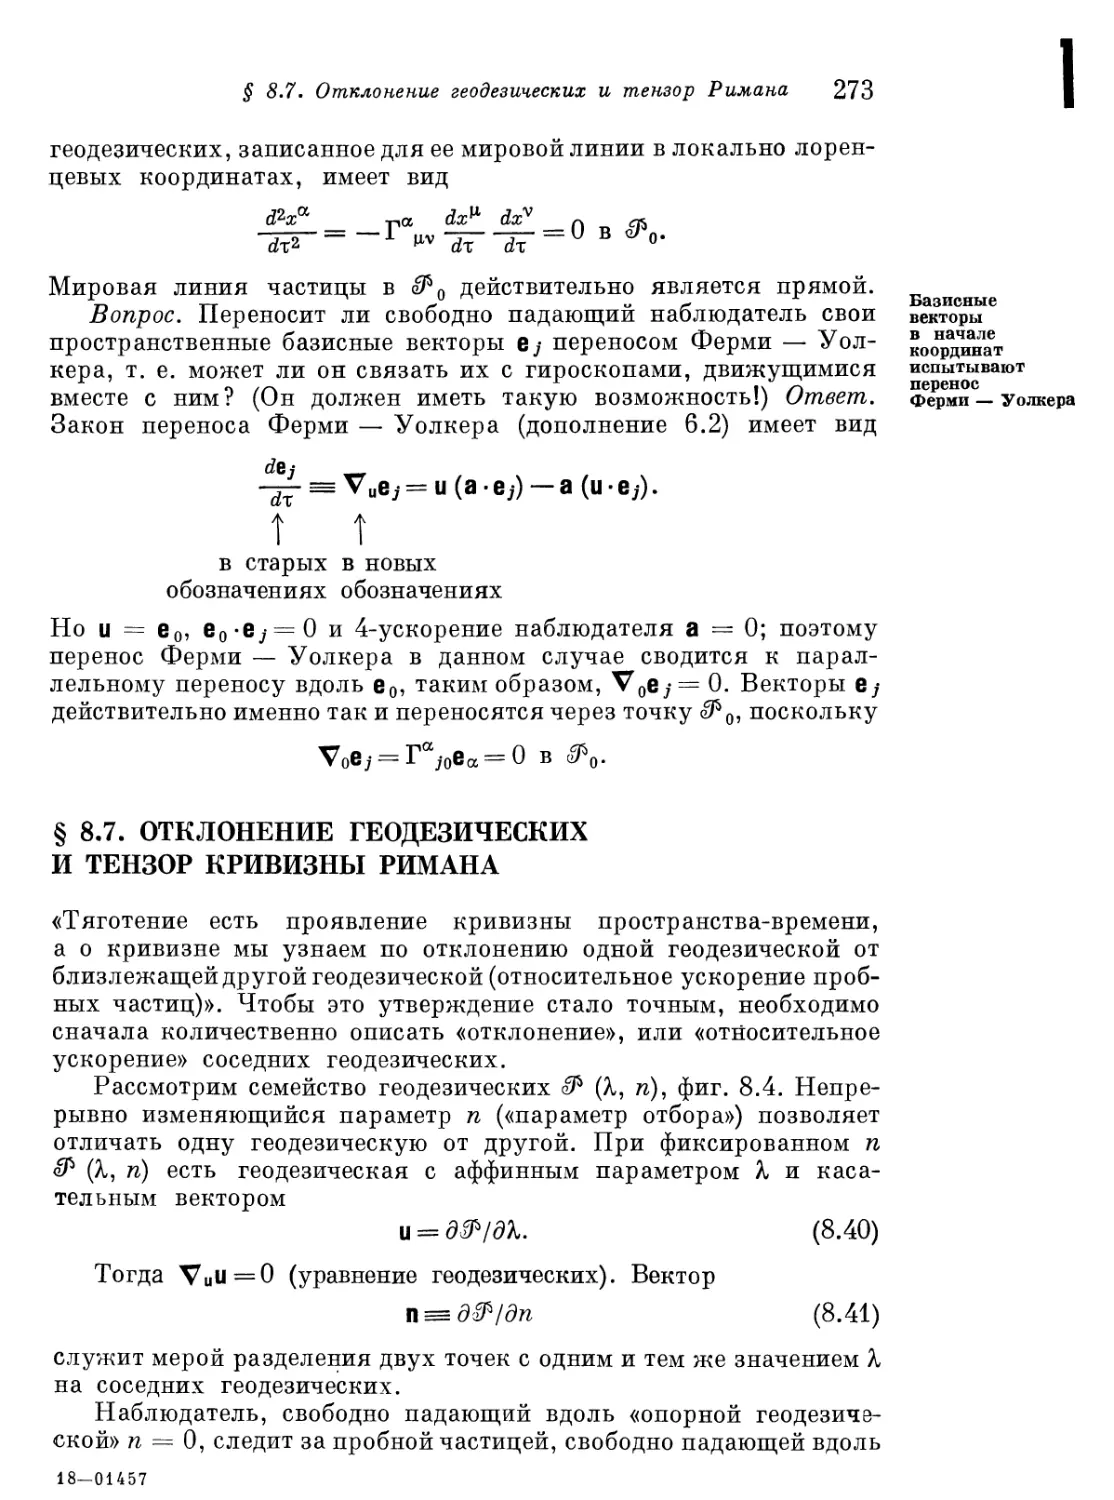 § 8.7. Отклонение геодезических и тензор кривизны Римана